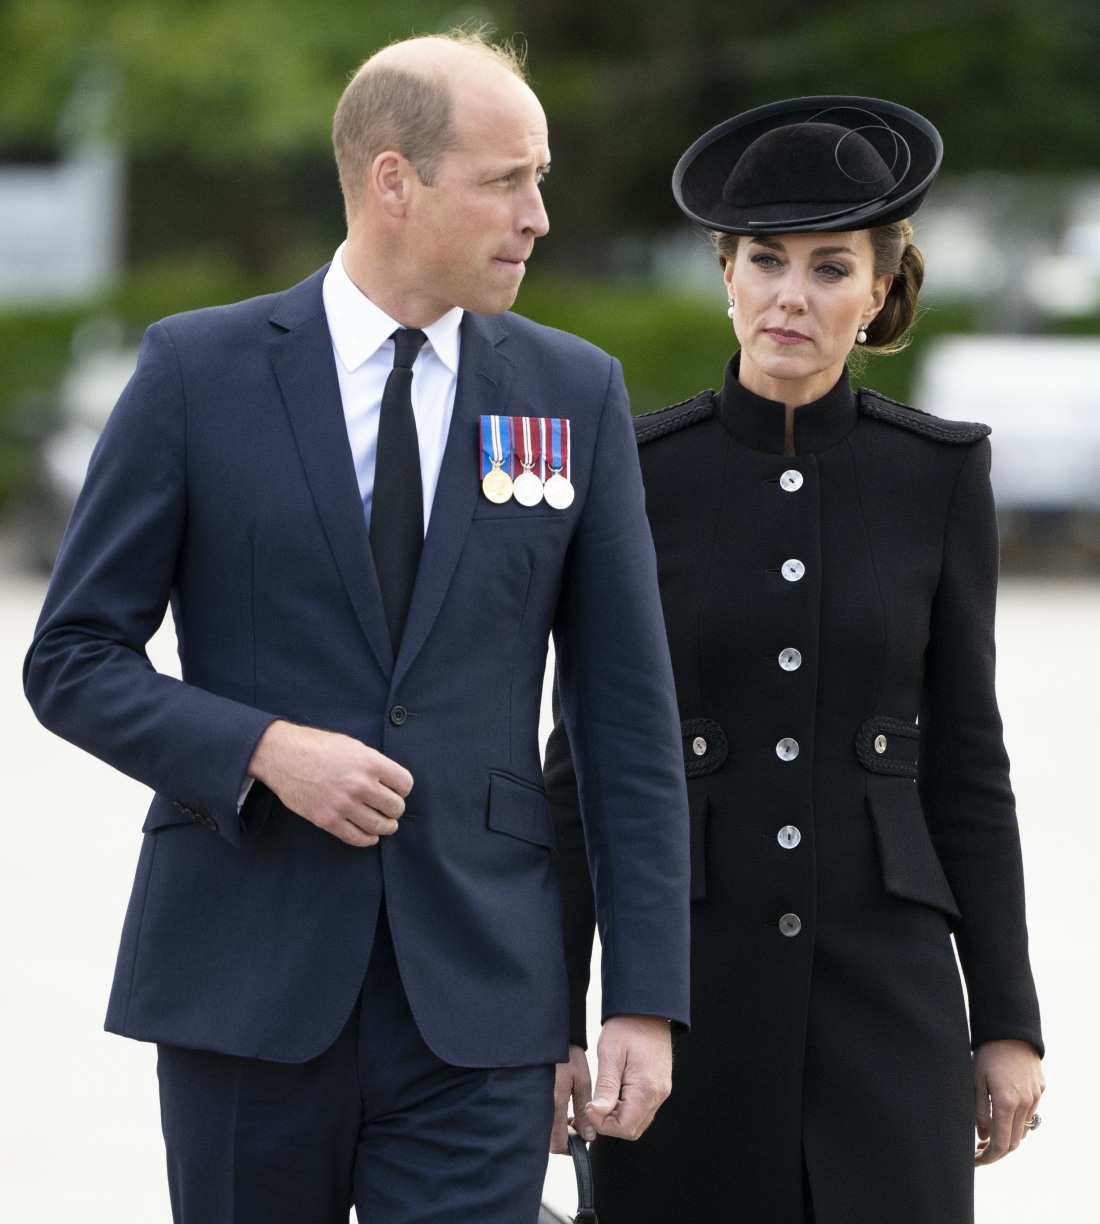 kaltak | Prens William ve Kate muhtemelen gelecek yıl Avustralya'ya kraliyet turuna çıkacak